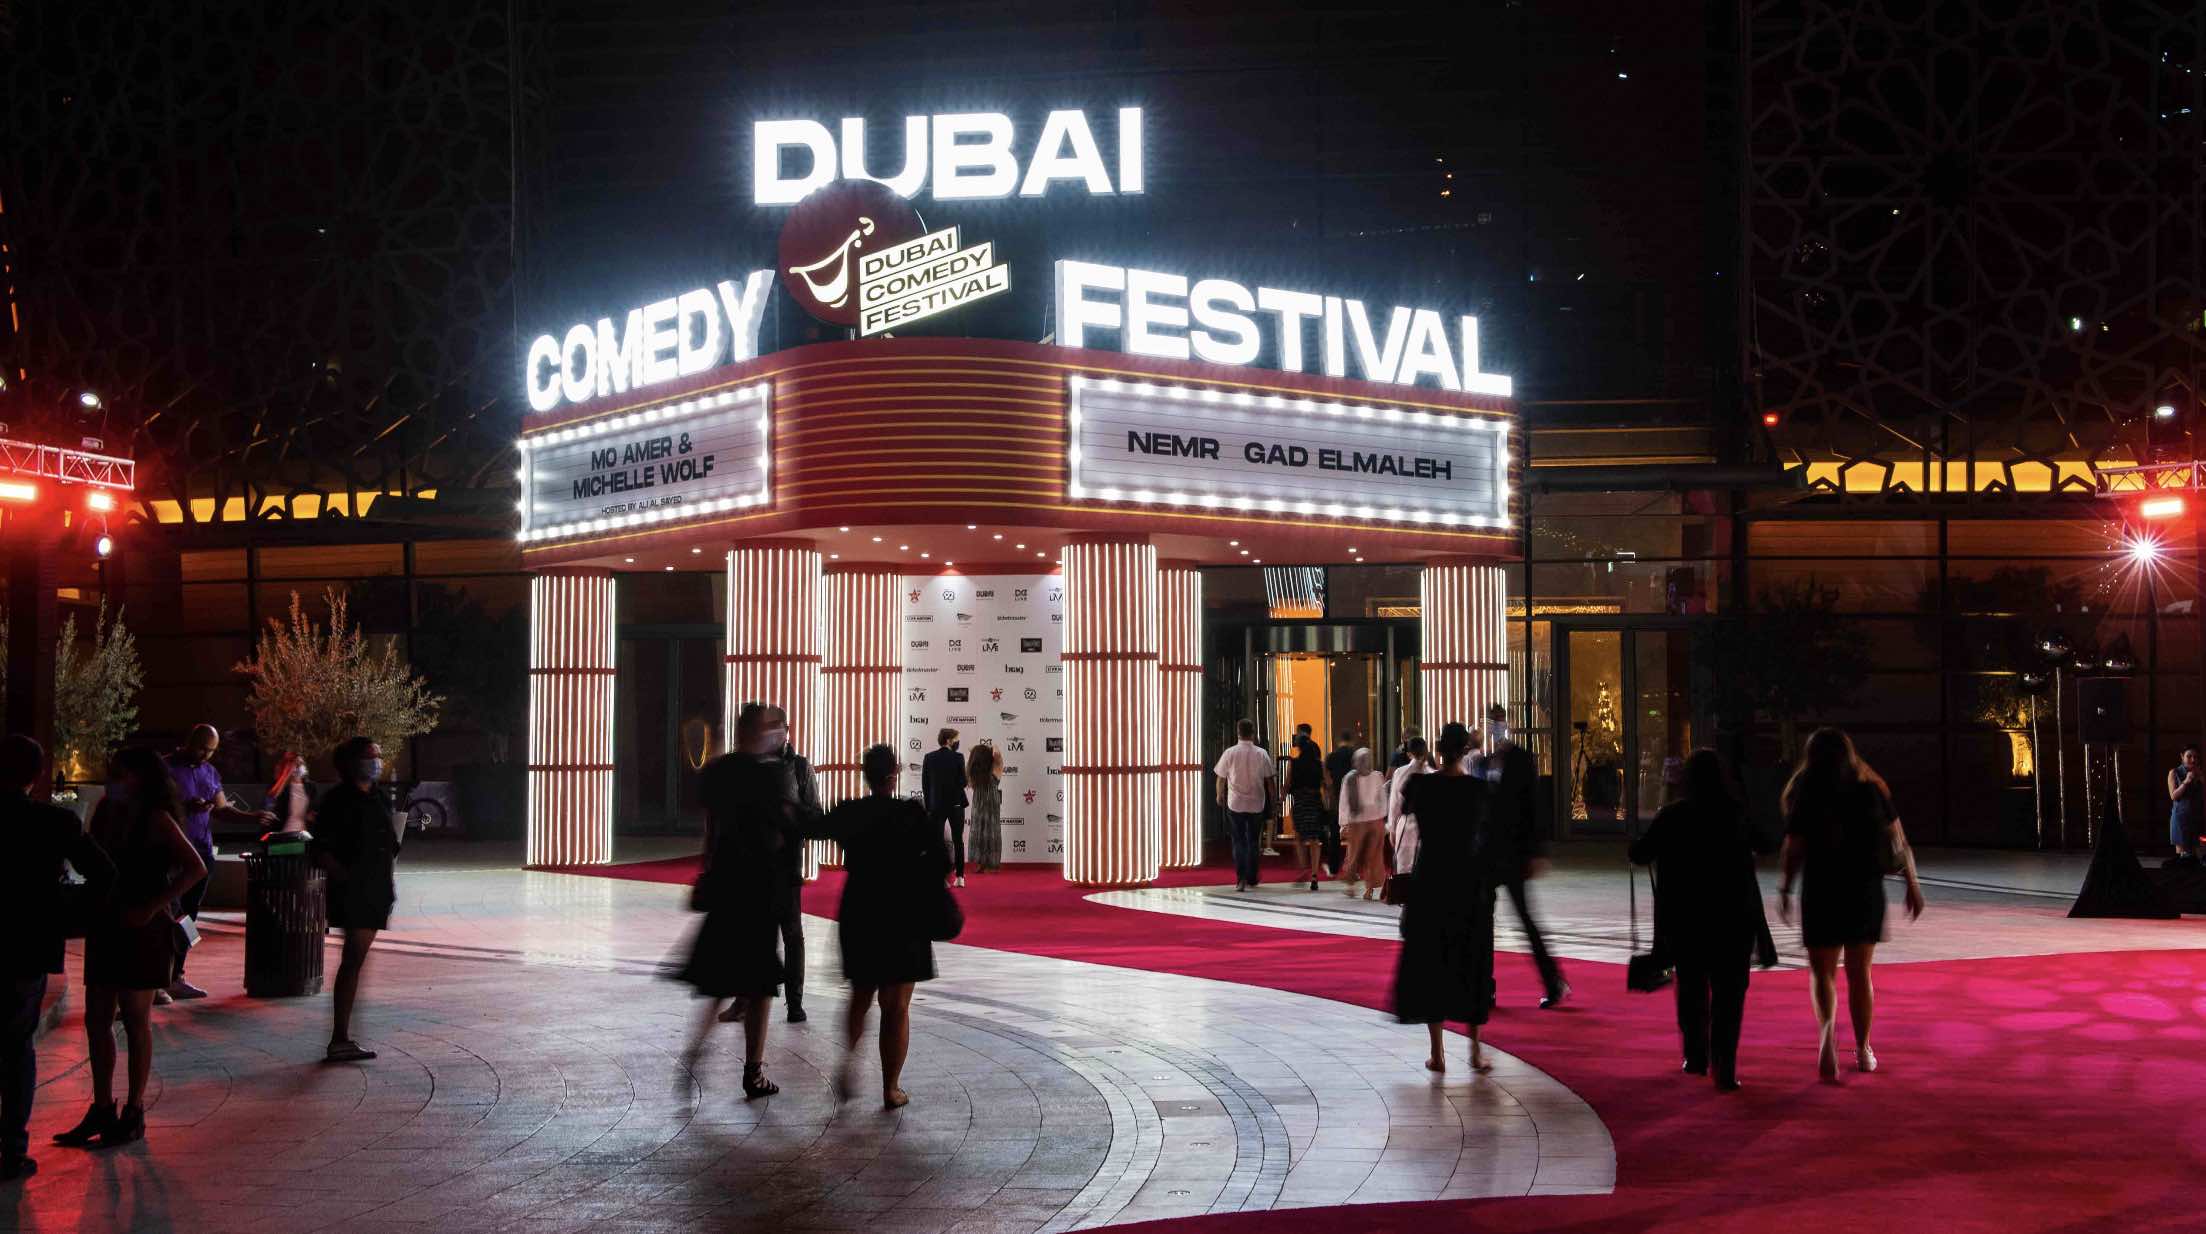 Dubai Comedy Festival